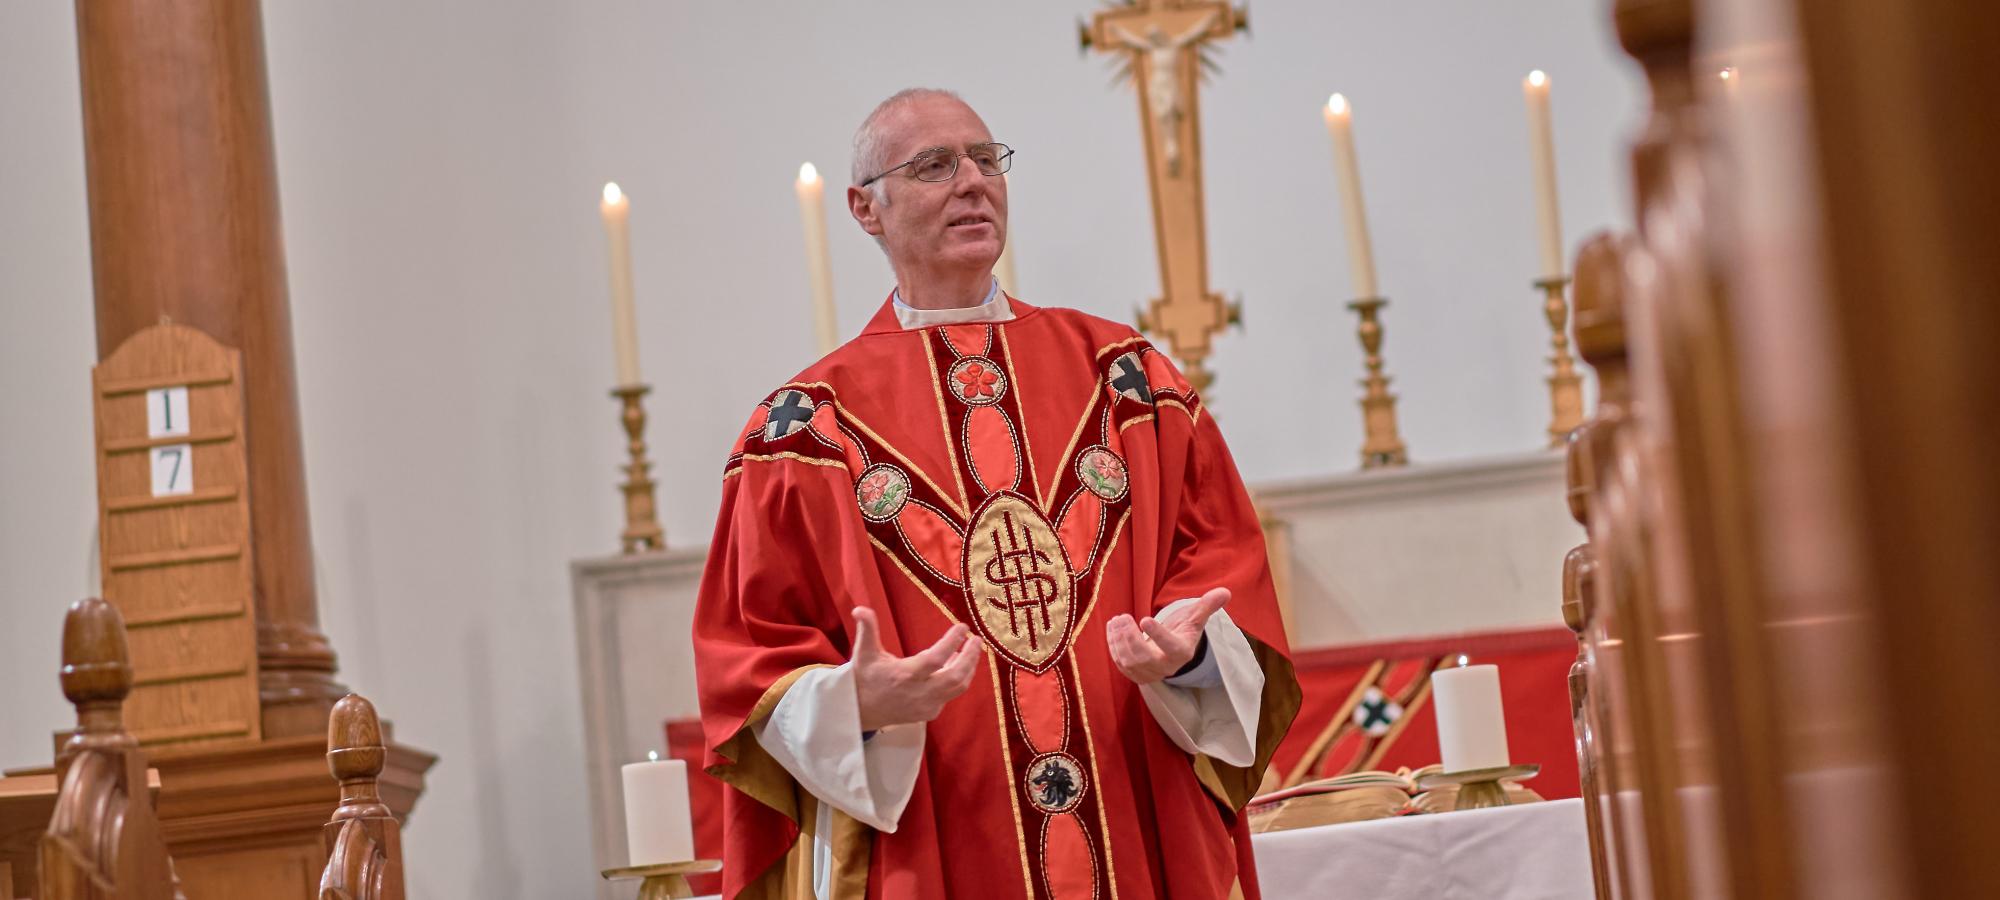 Master of Campion presiding at Mass